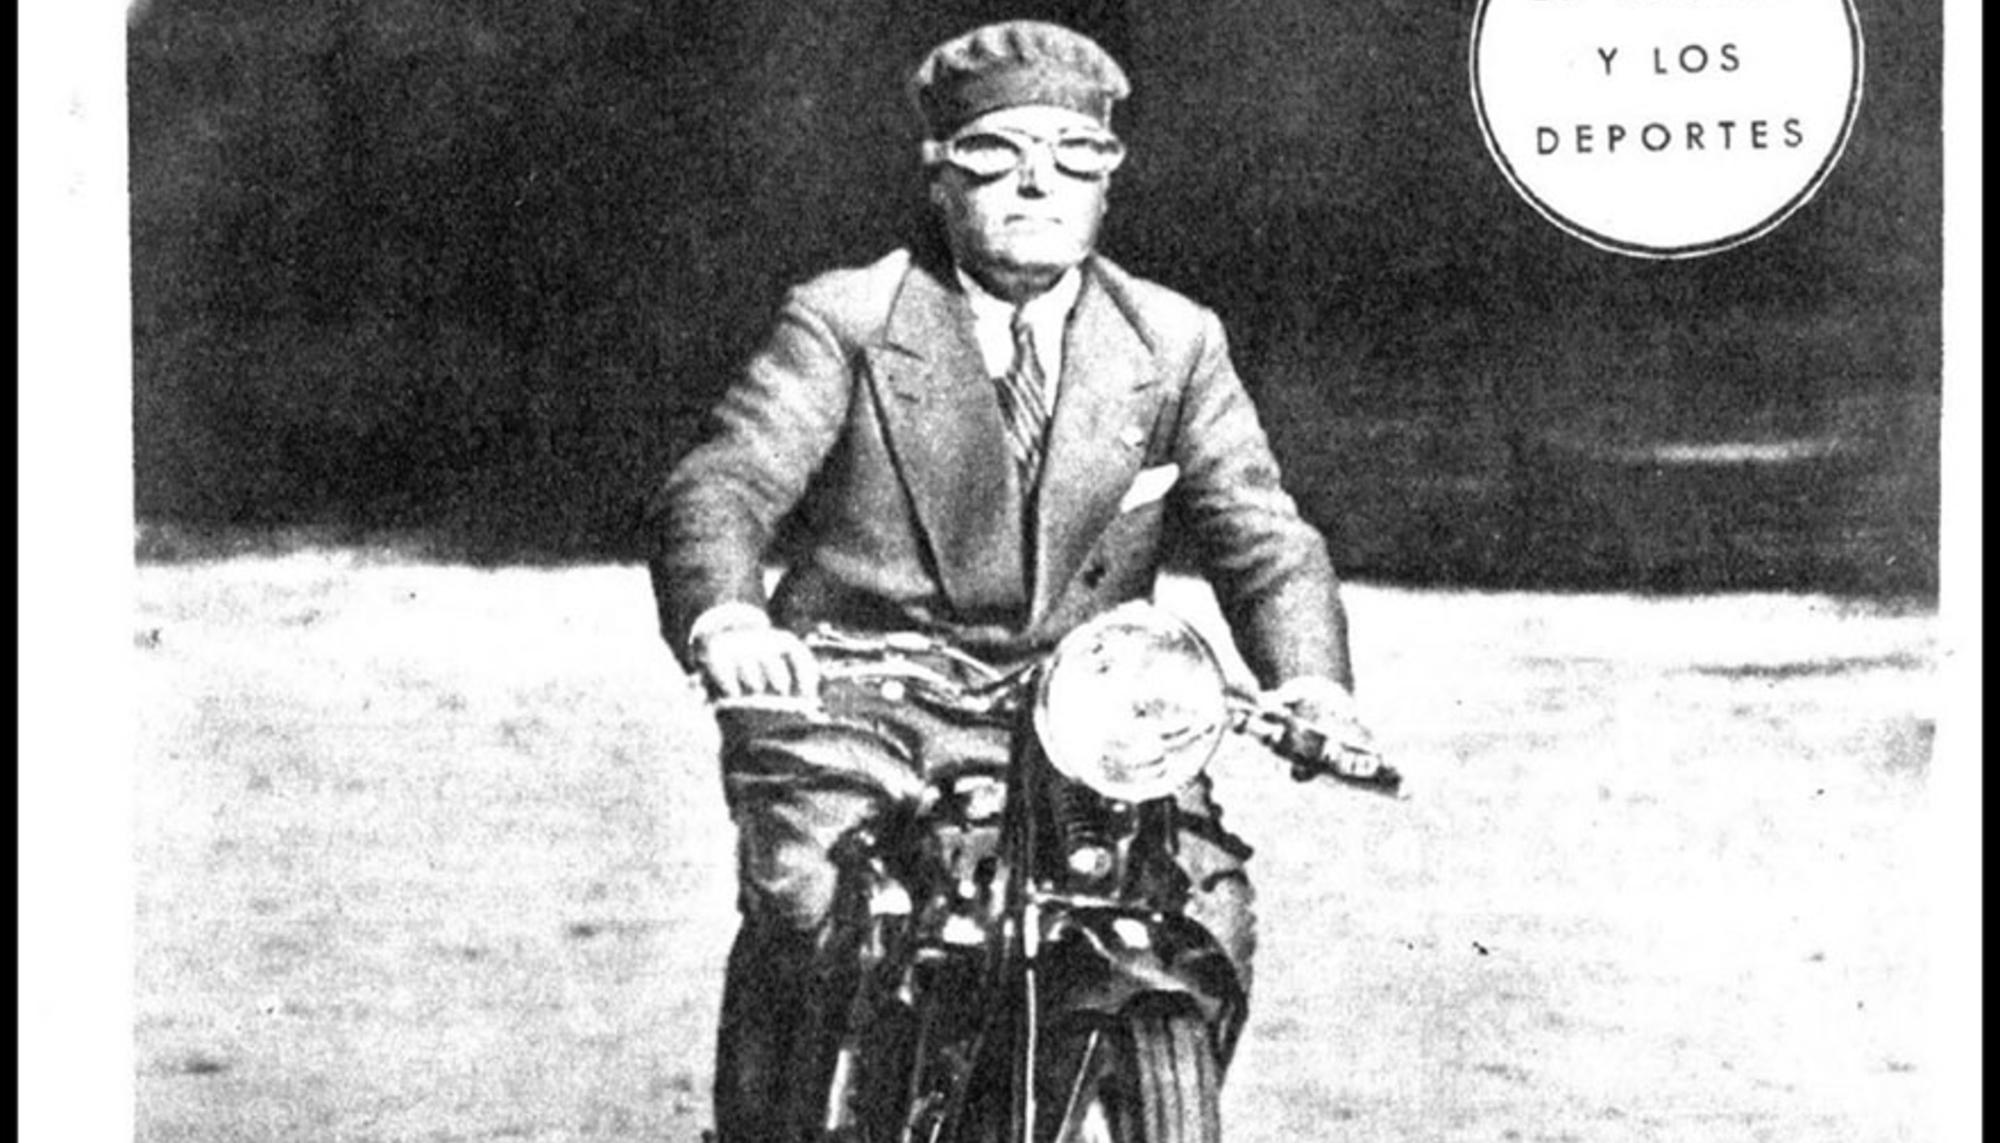 Mussolini en moto en portada de 'ABC' en 1932.